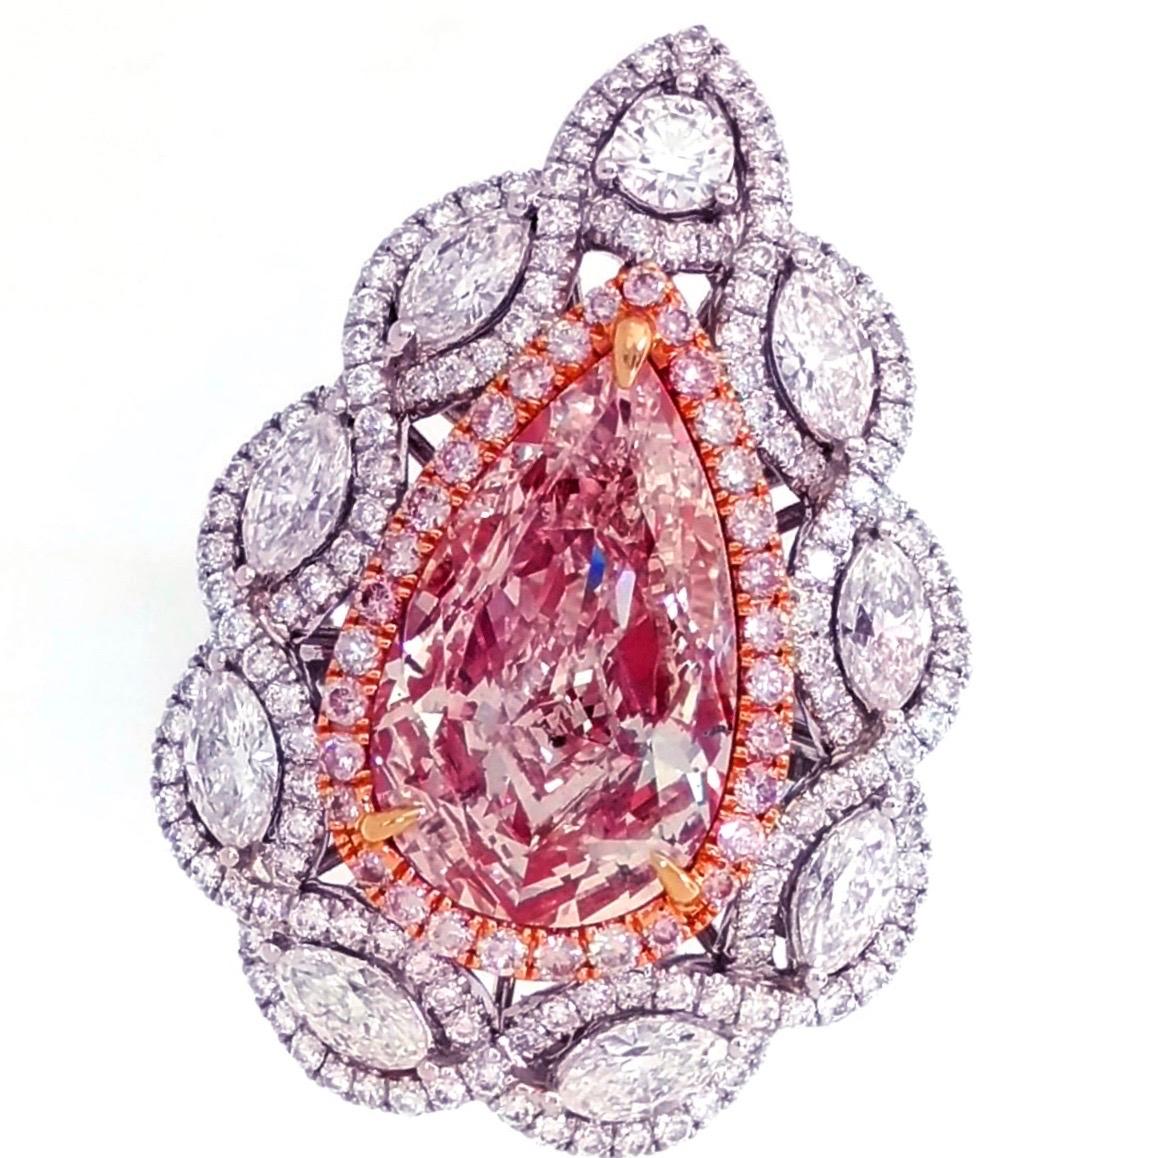 En provenance du coffre-fort d'Emilio Jewelry, nous vous présentons un diamant certifié Gia de plus de 4 carats de couleur naturelle rose brunâtre au centre.
Cette pièce a été fabriquée à la main dans l'atelier d'Emilio Jewelry, qui est spécialisé